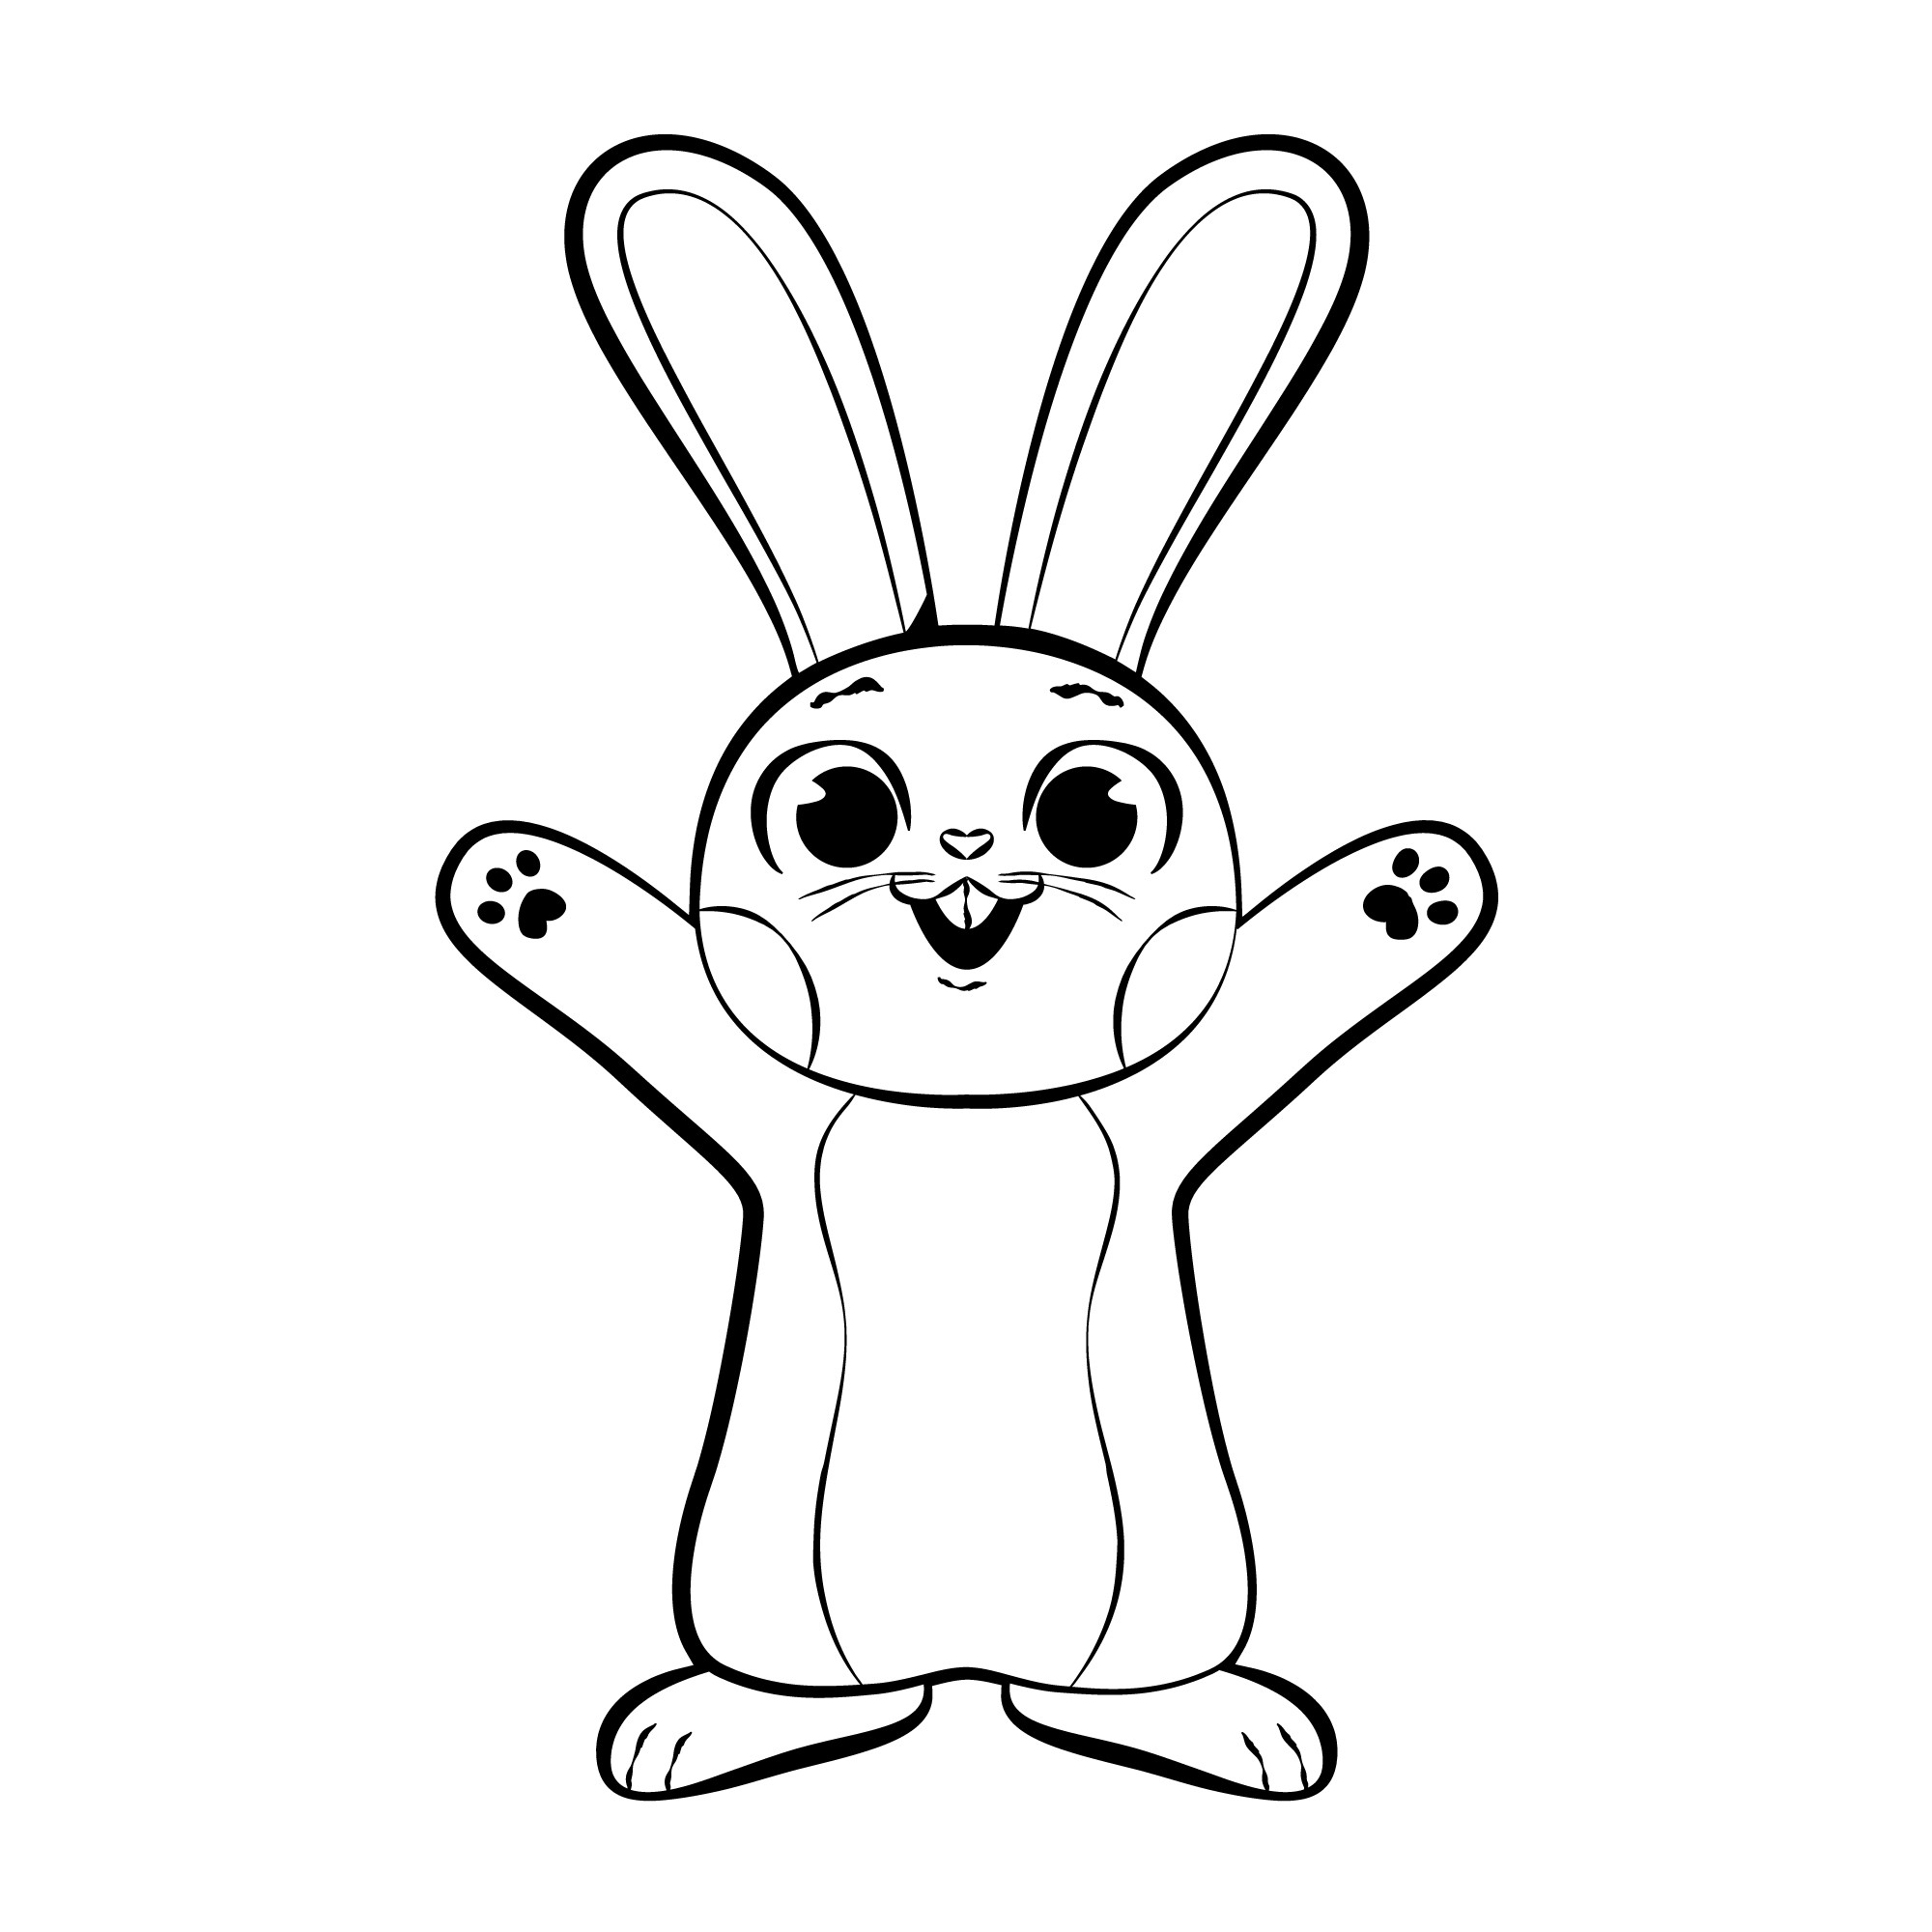 Раскраска для детей: игрушечный заяц с поднятыми лапами